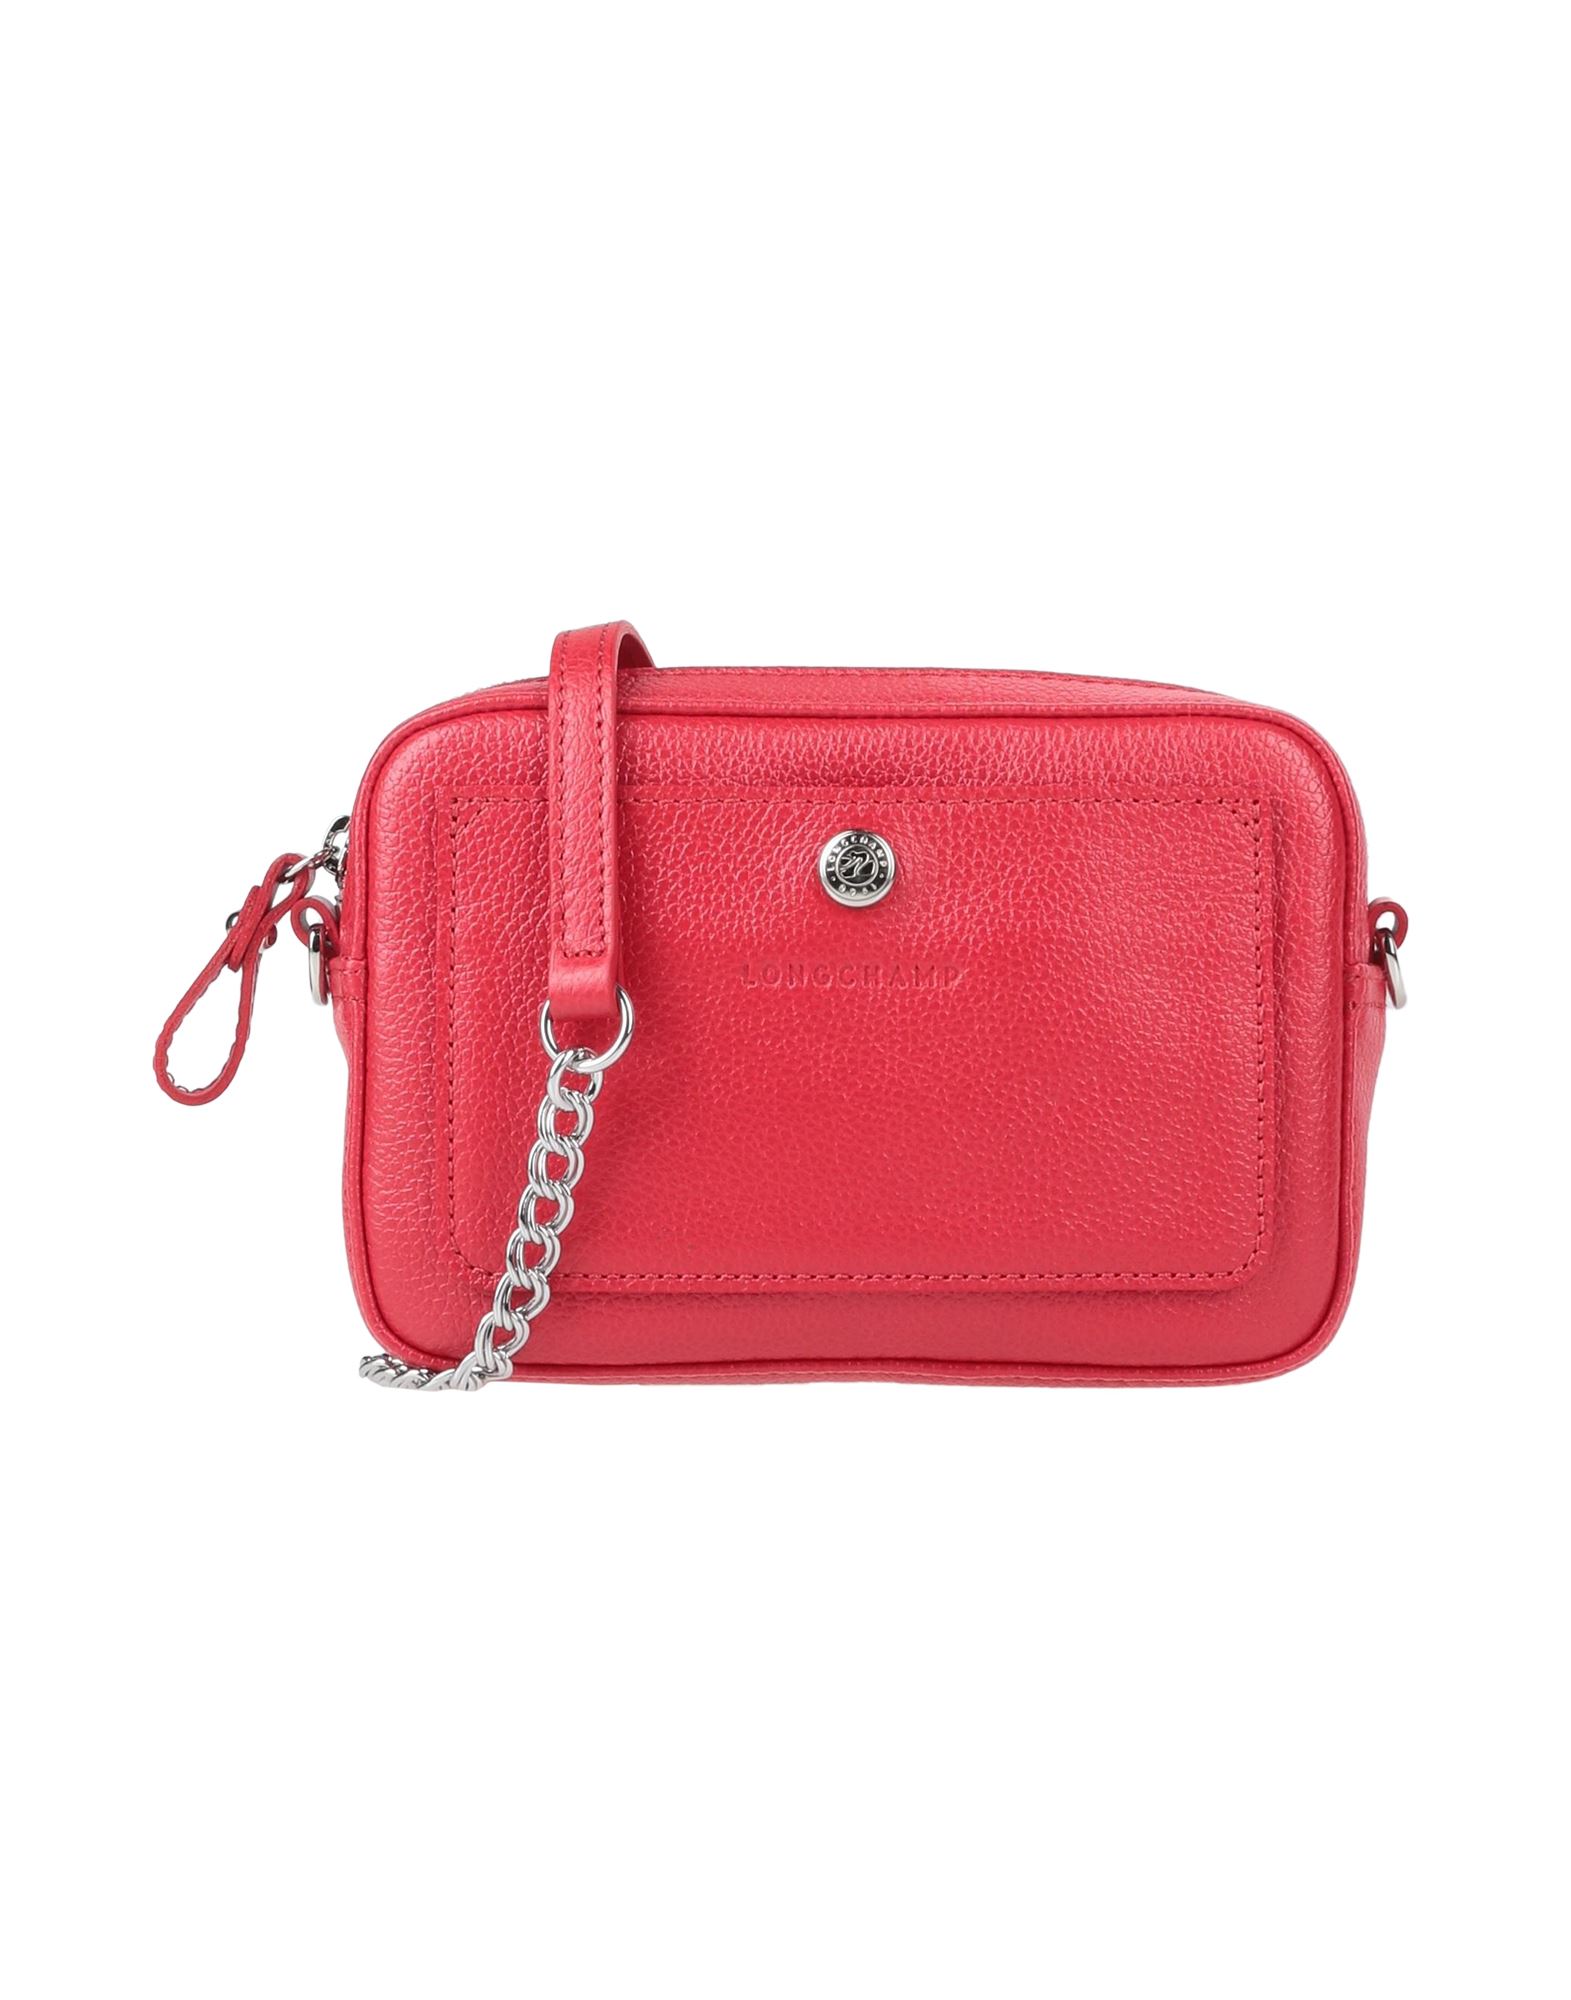 Longchamp Handbags In Red